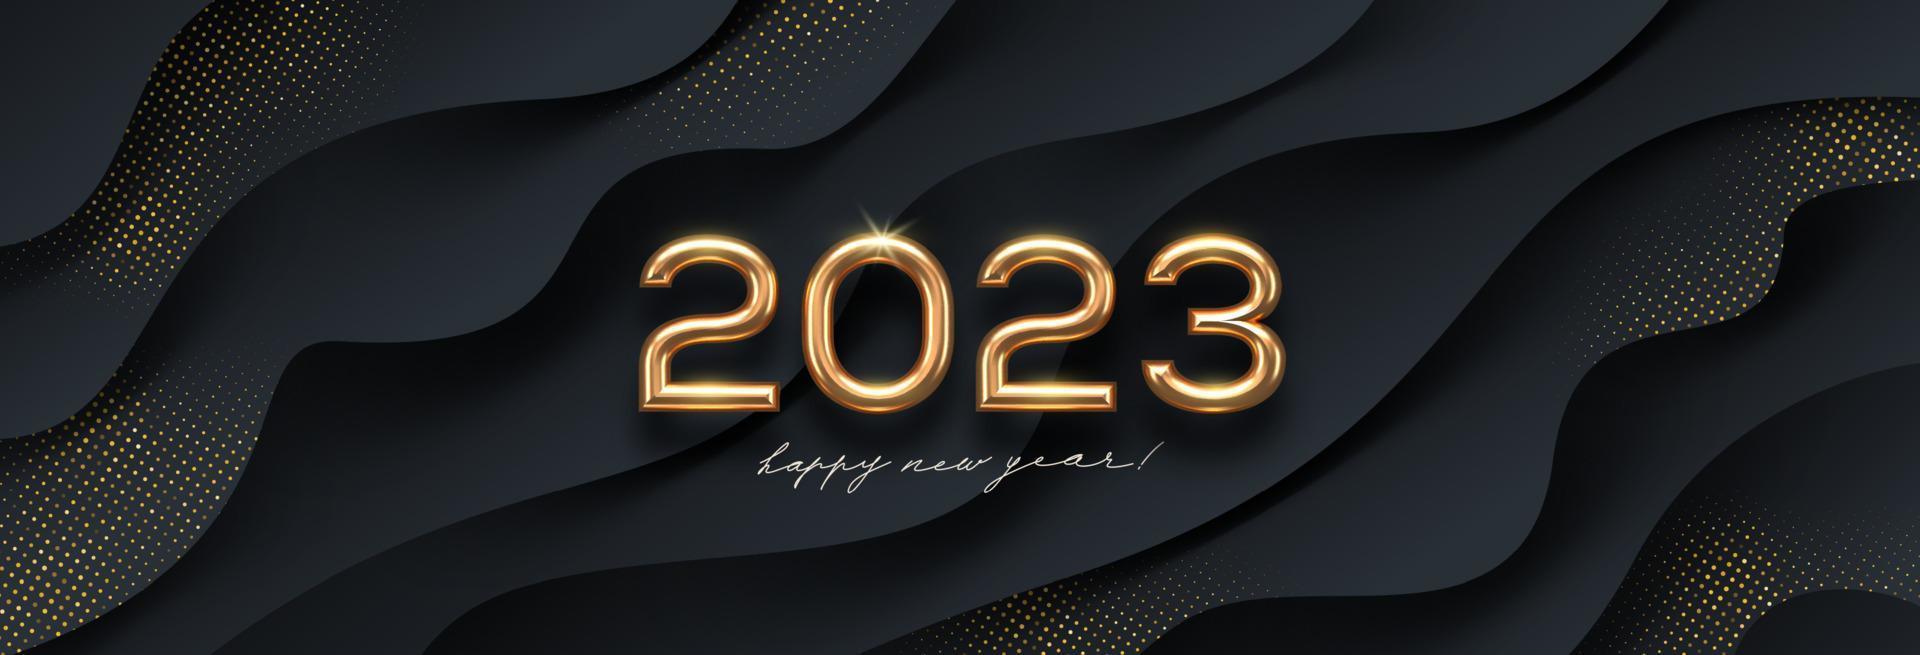 2023 nuovo anno d'oro logo su astratto nero onde sfondo. saluto design con realistico oro metallo numero di anno. design per saluto carta, invito, calendario, eccetera. vettore